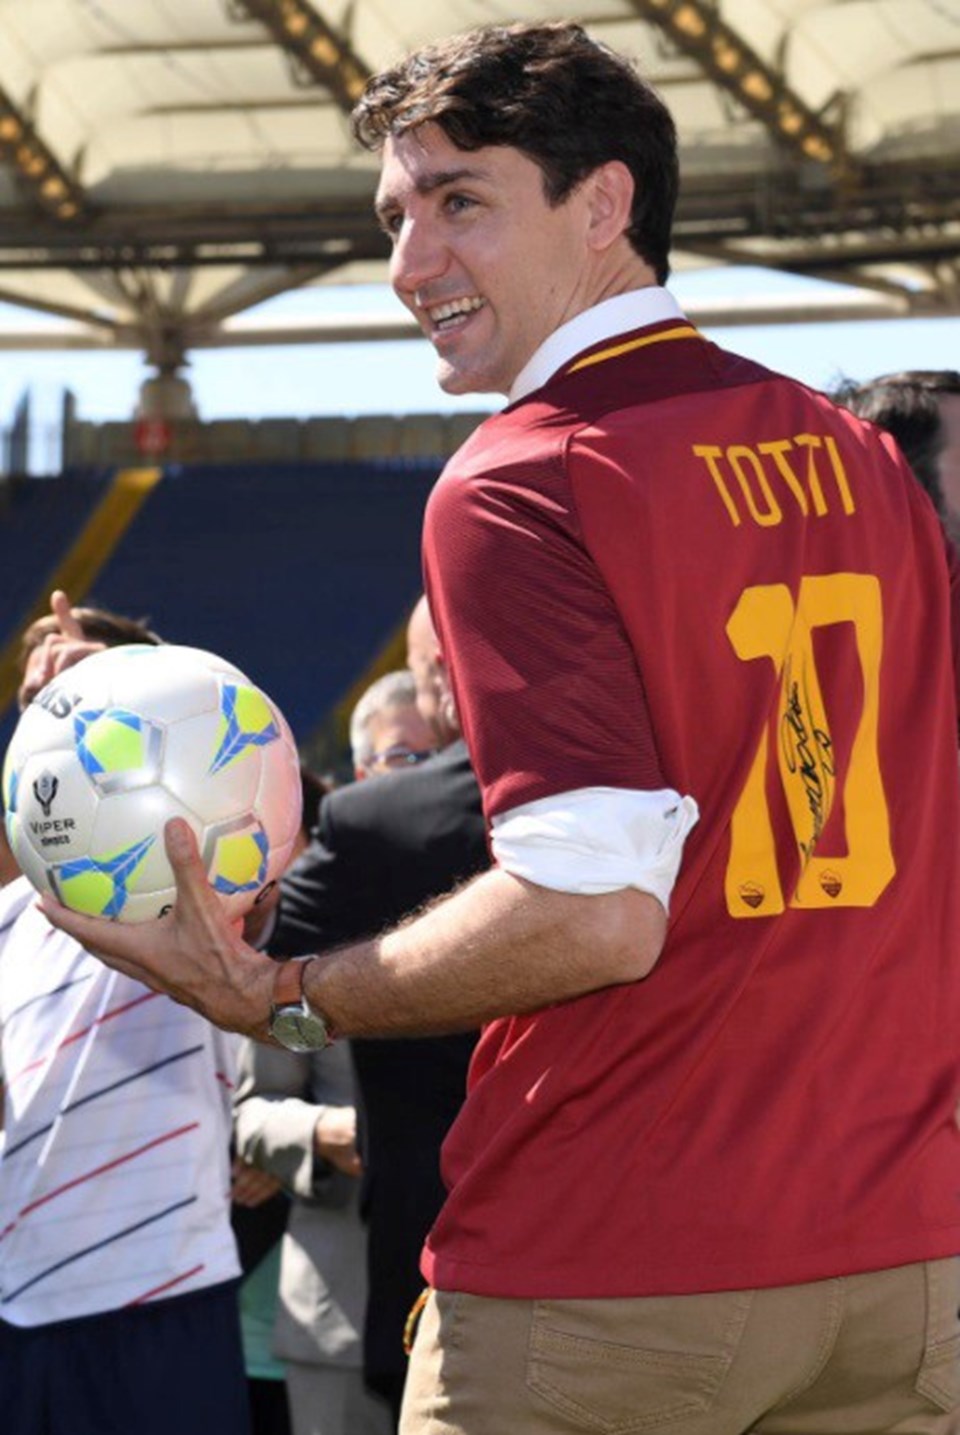 Kanada Başbakanı, Totti'nin formasını giydi - 1